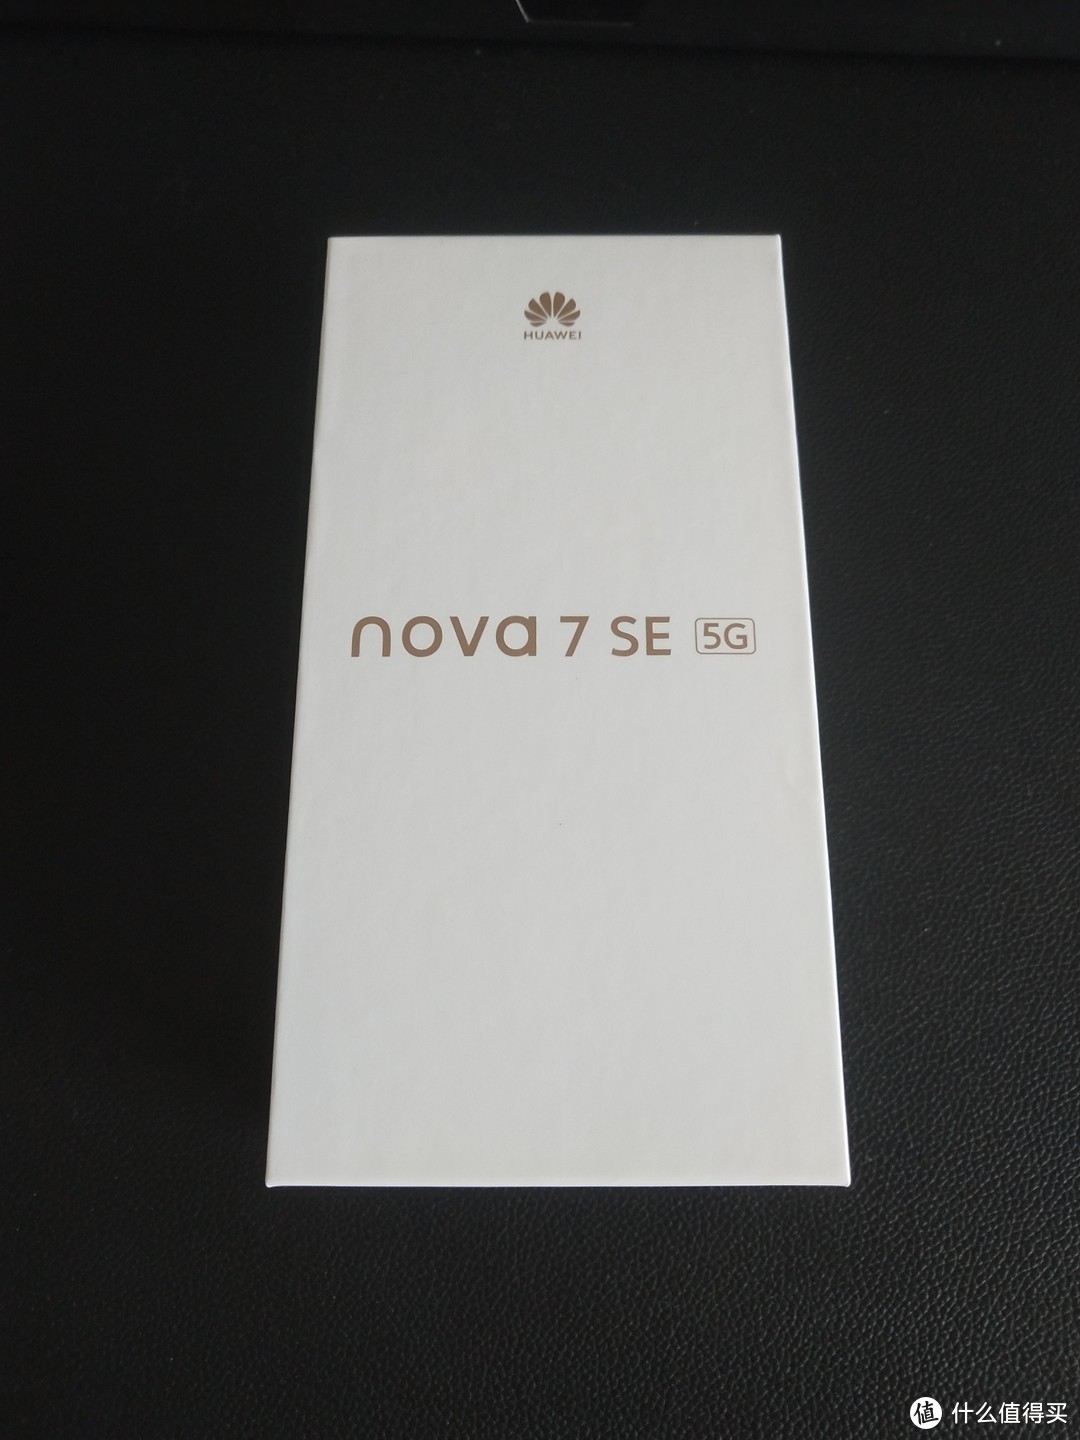 价格坚挺的国产之光——华为NOVA 7 SE 5G手机开箱